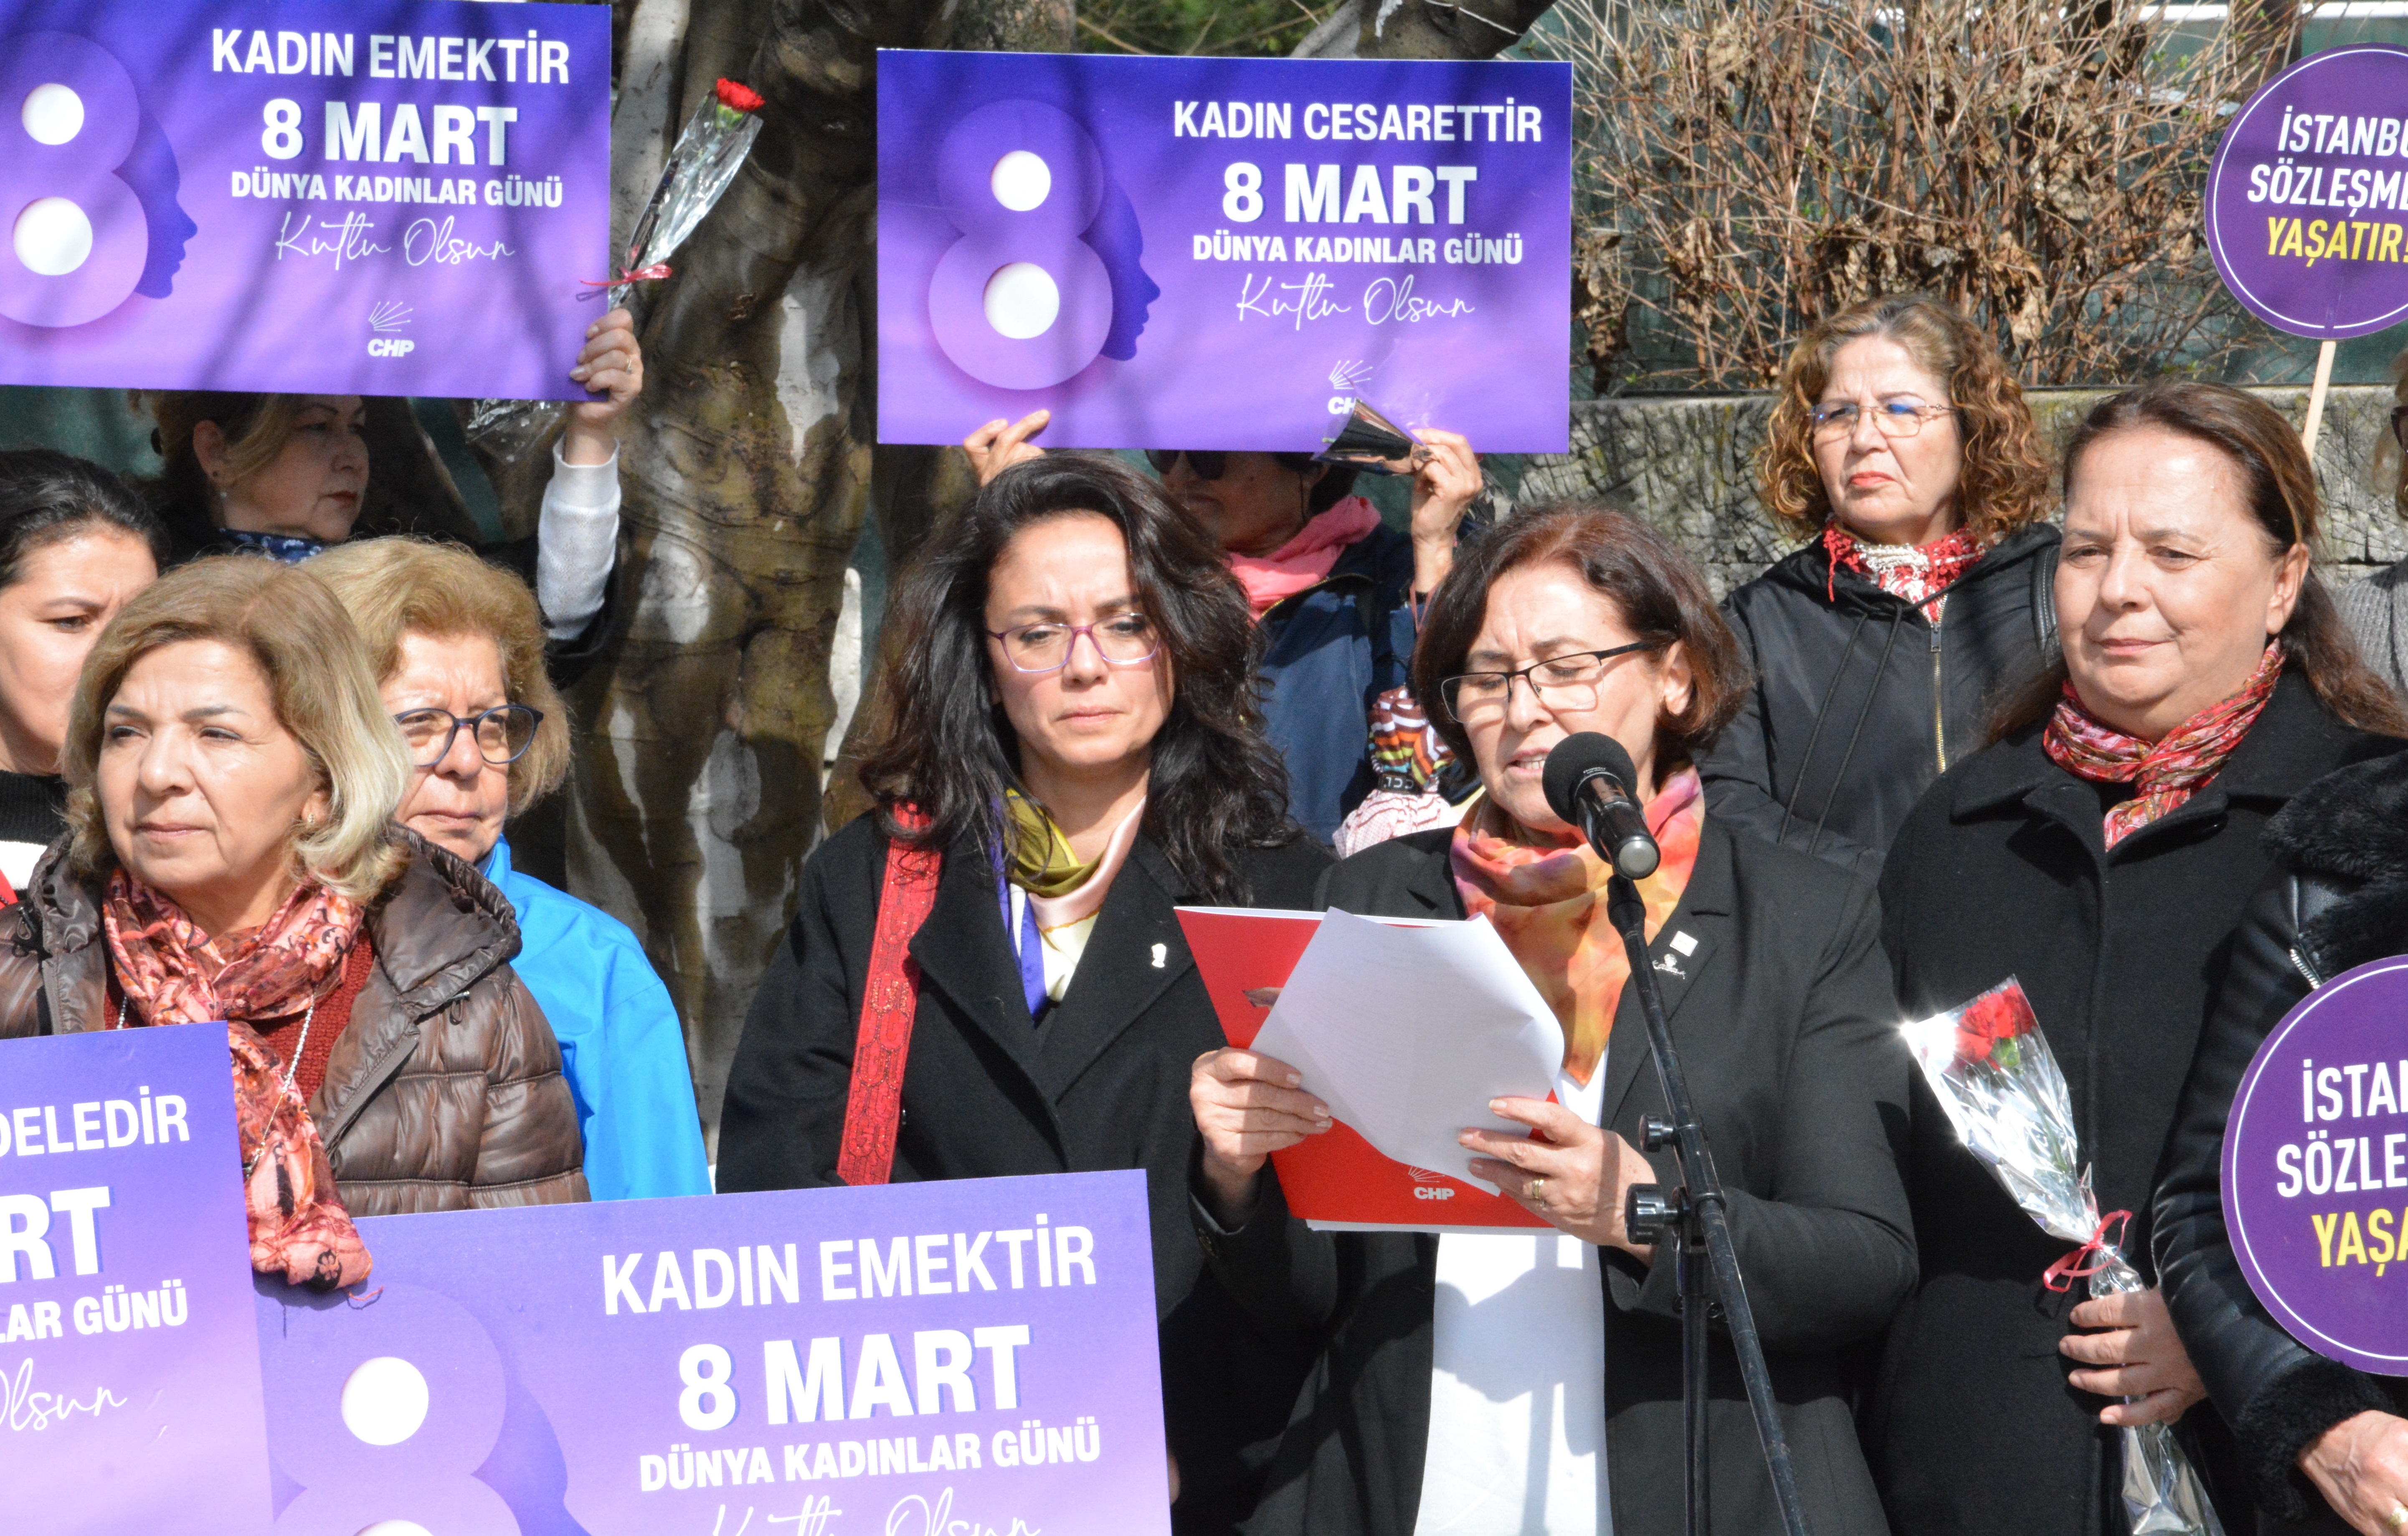 CHP Muğla Kadın Kolları: “Eşit bir Türkiye için mücadele ediyoruz